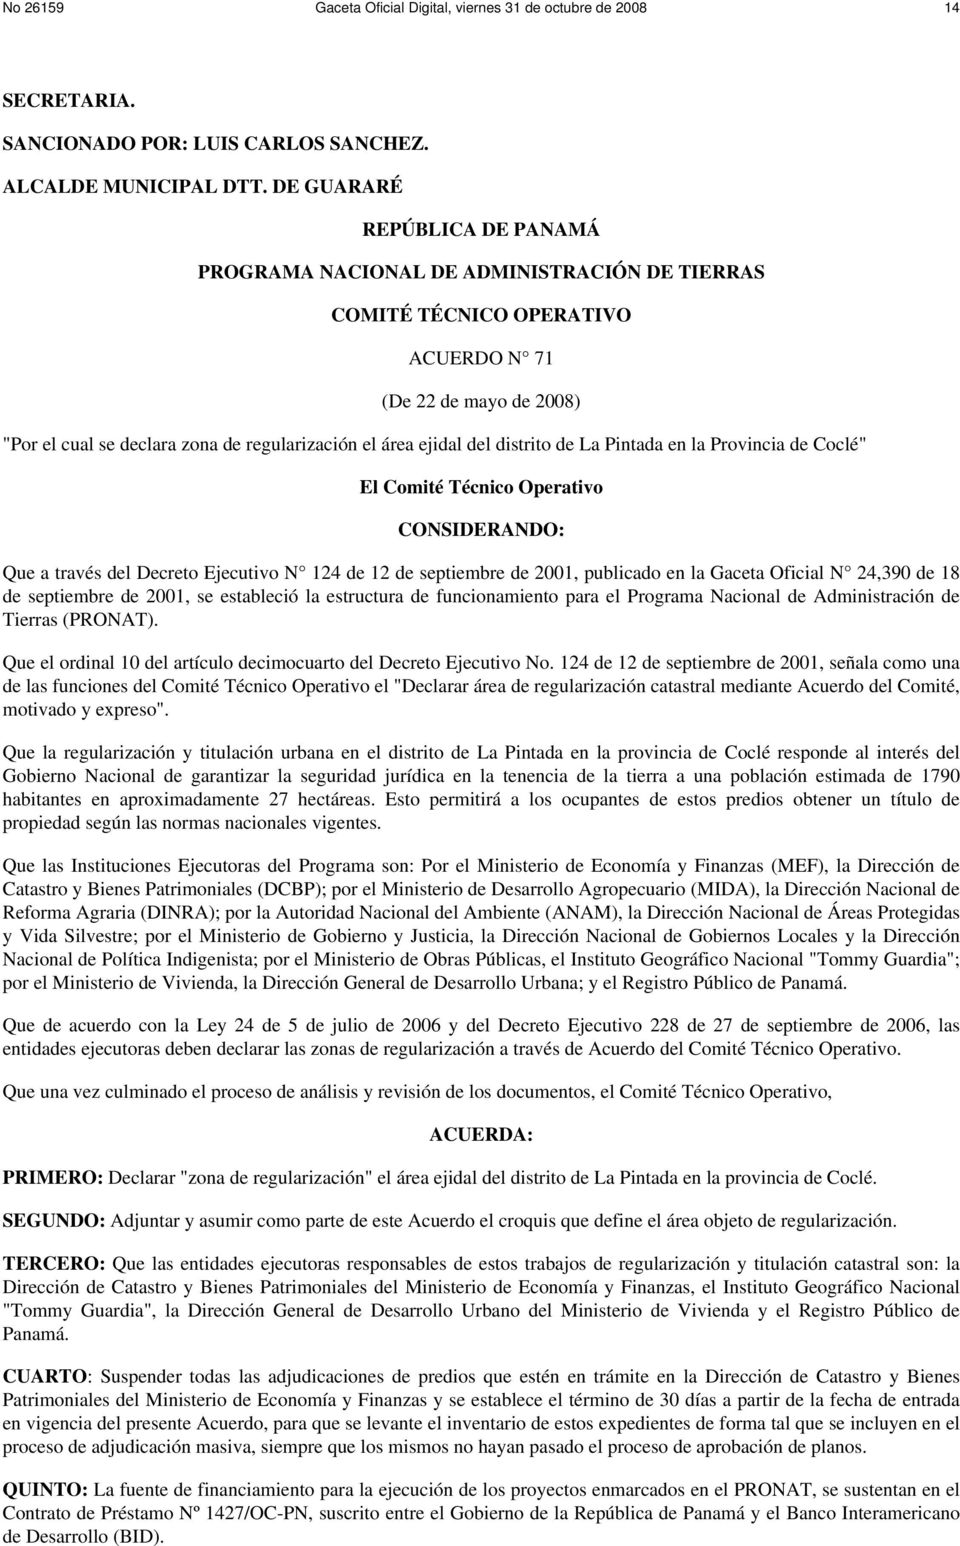 ejidal del distrito de La Pintada en la Provincia de Coclé" El Comité Técnico Operativo CONSIDERANDO: Que a través del Decreto Ejecutivo N 124 de 12 de septiembre de 2001, publicado en la Gaceta